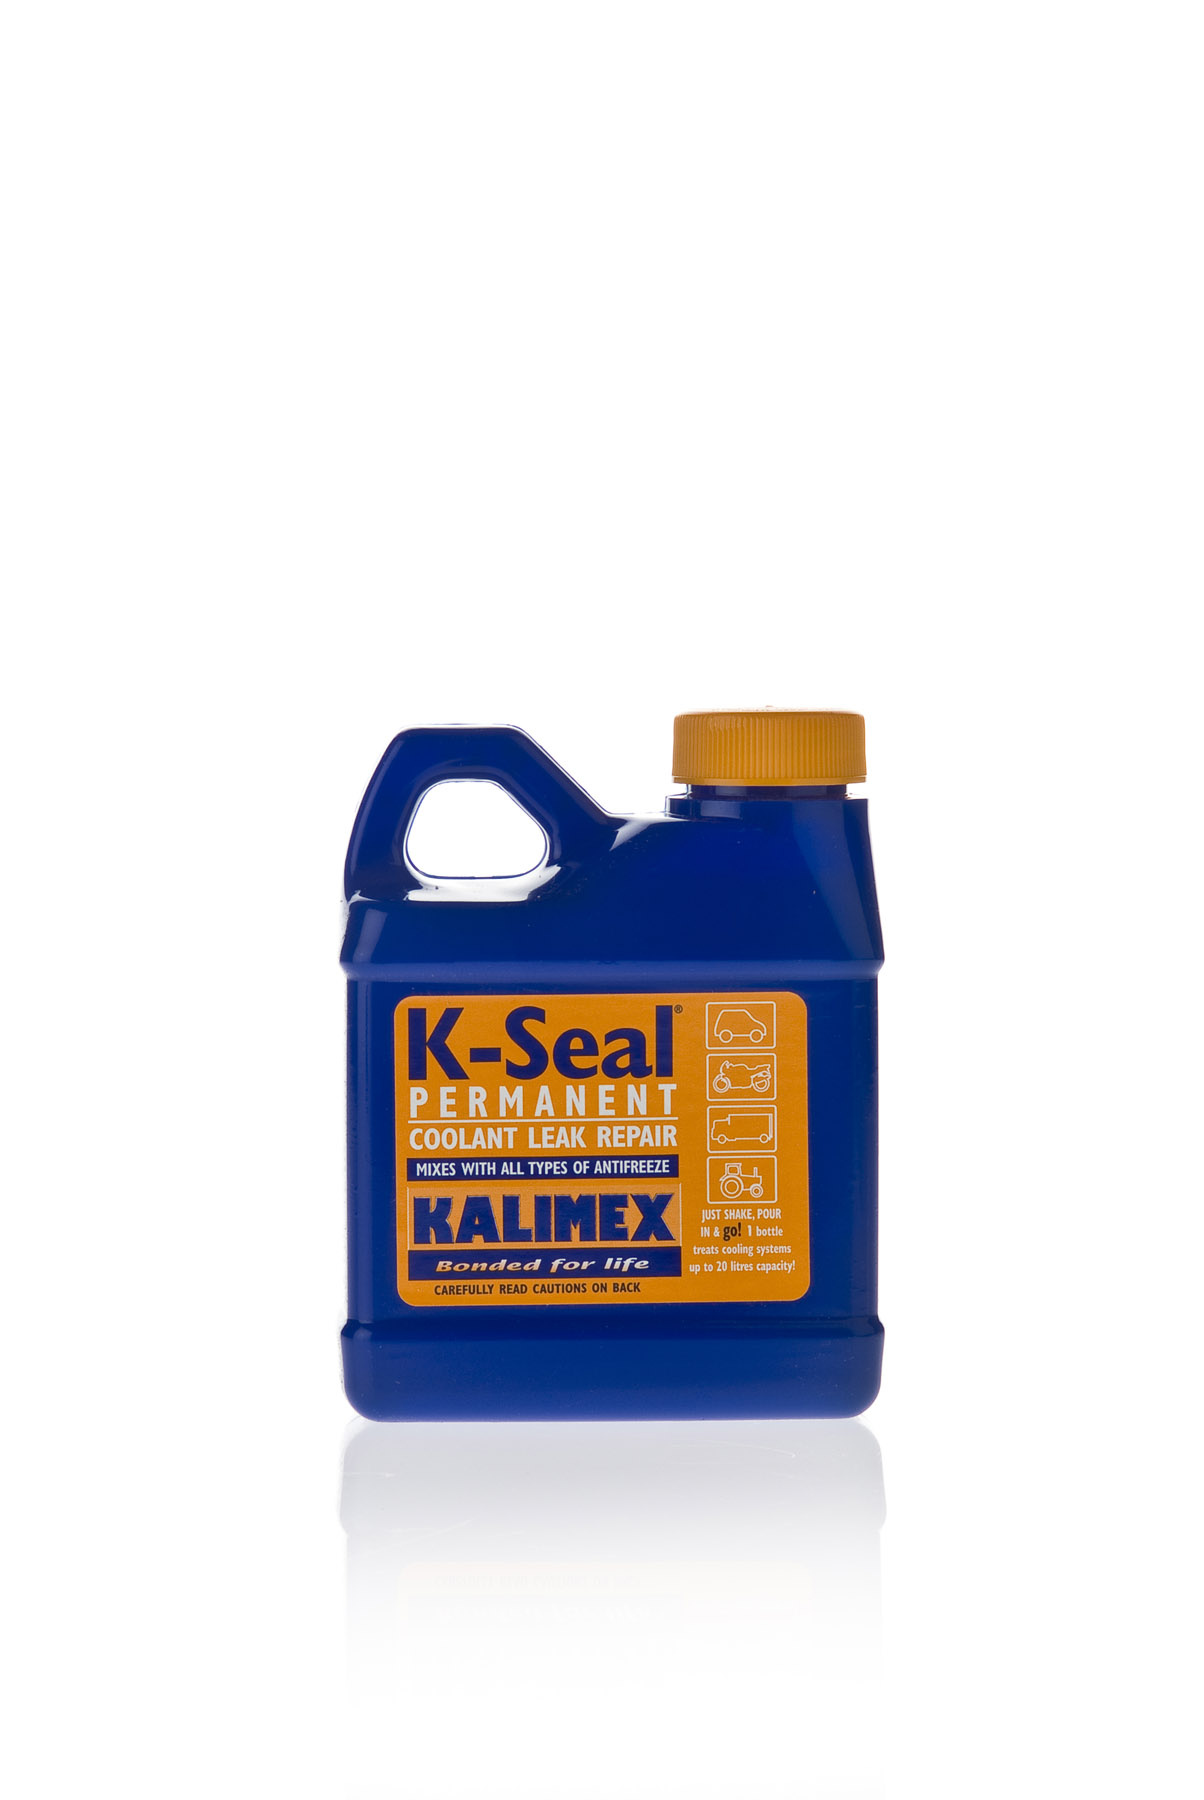 K-Seal K-Seal Cooling System Repair 236ml